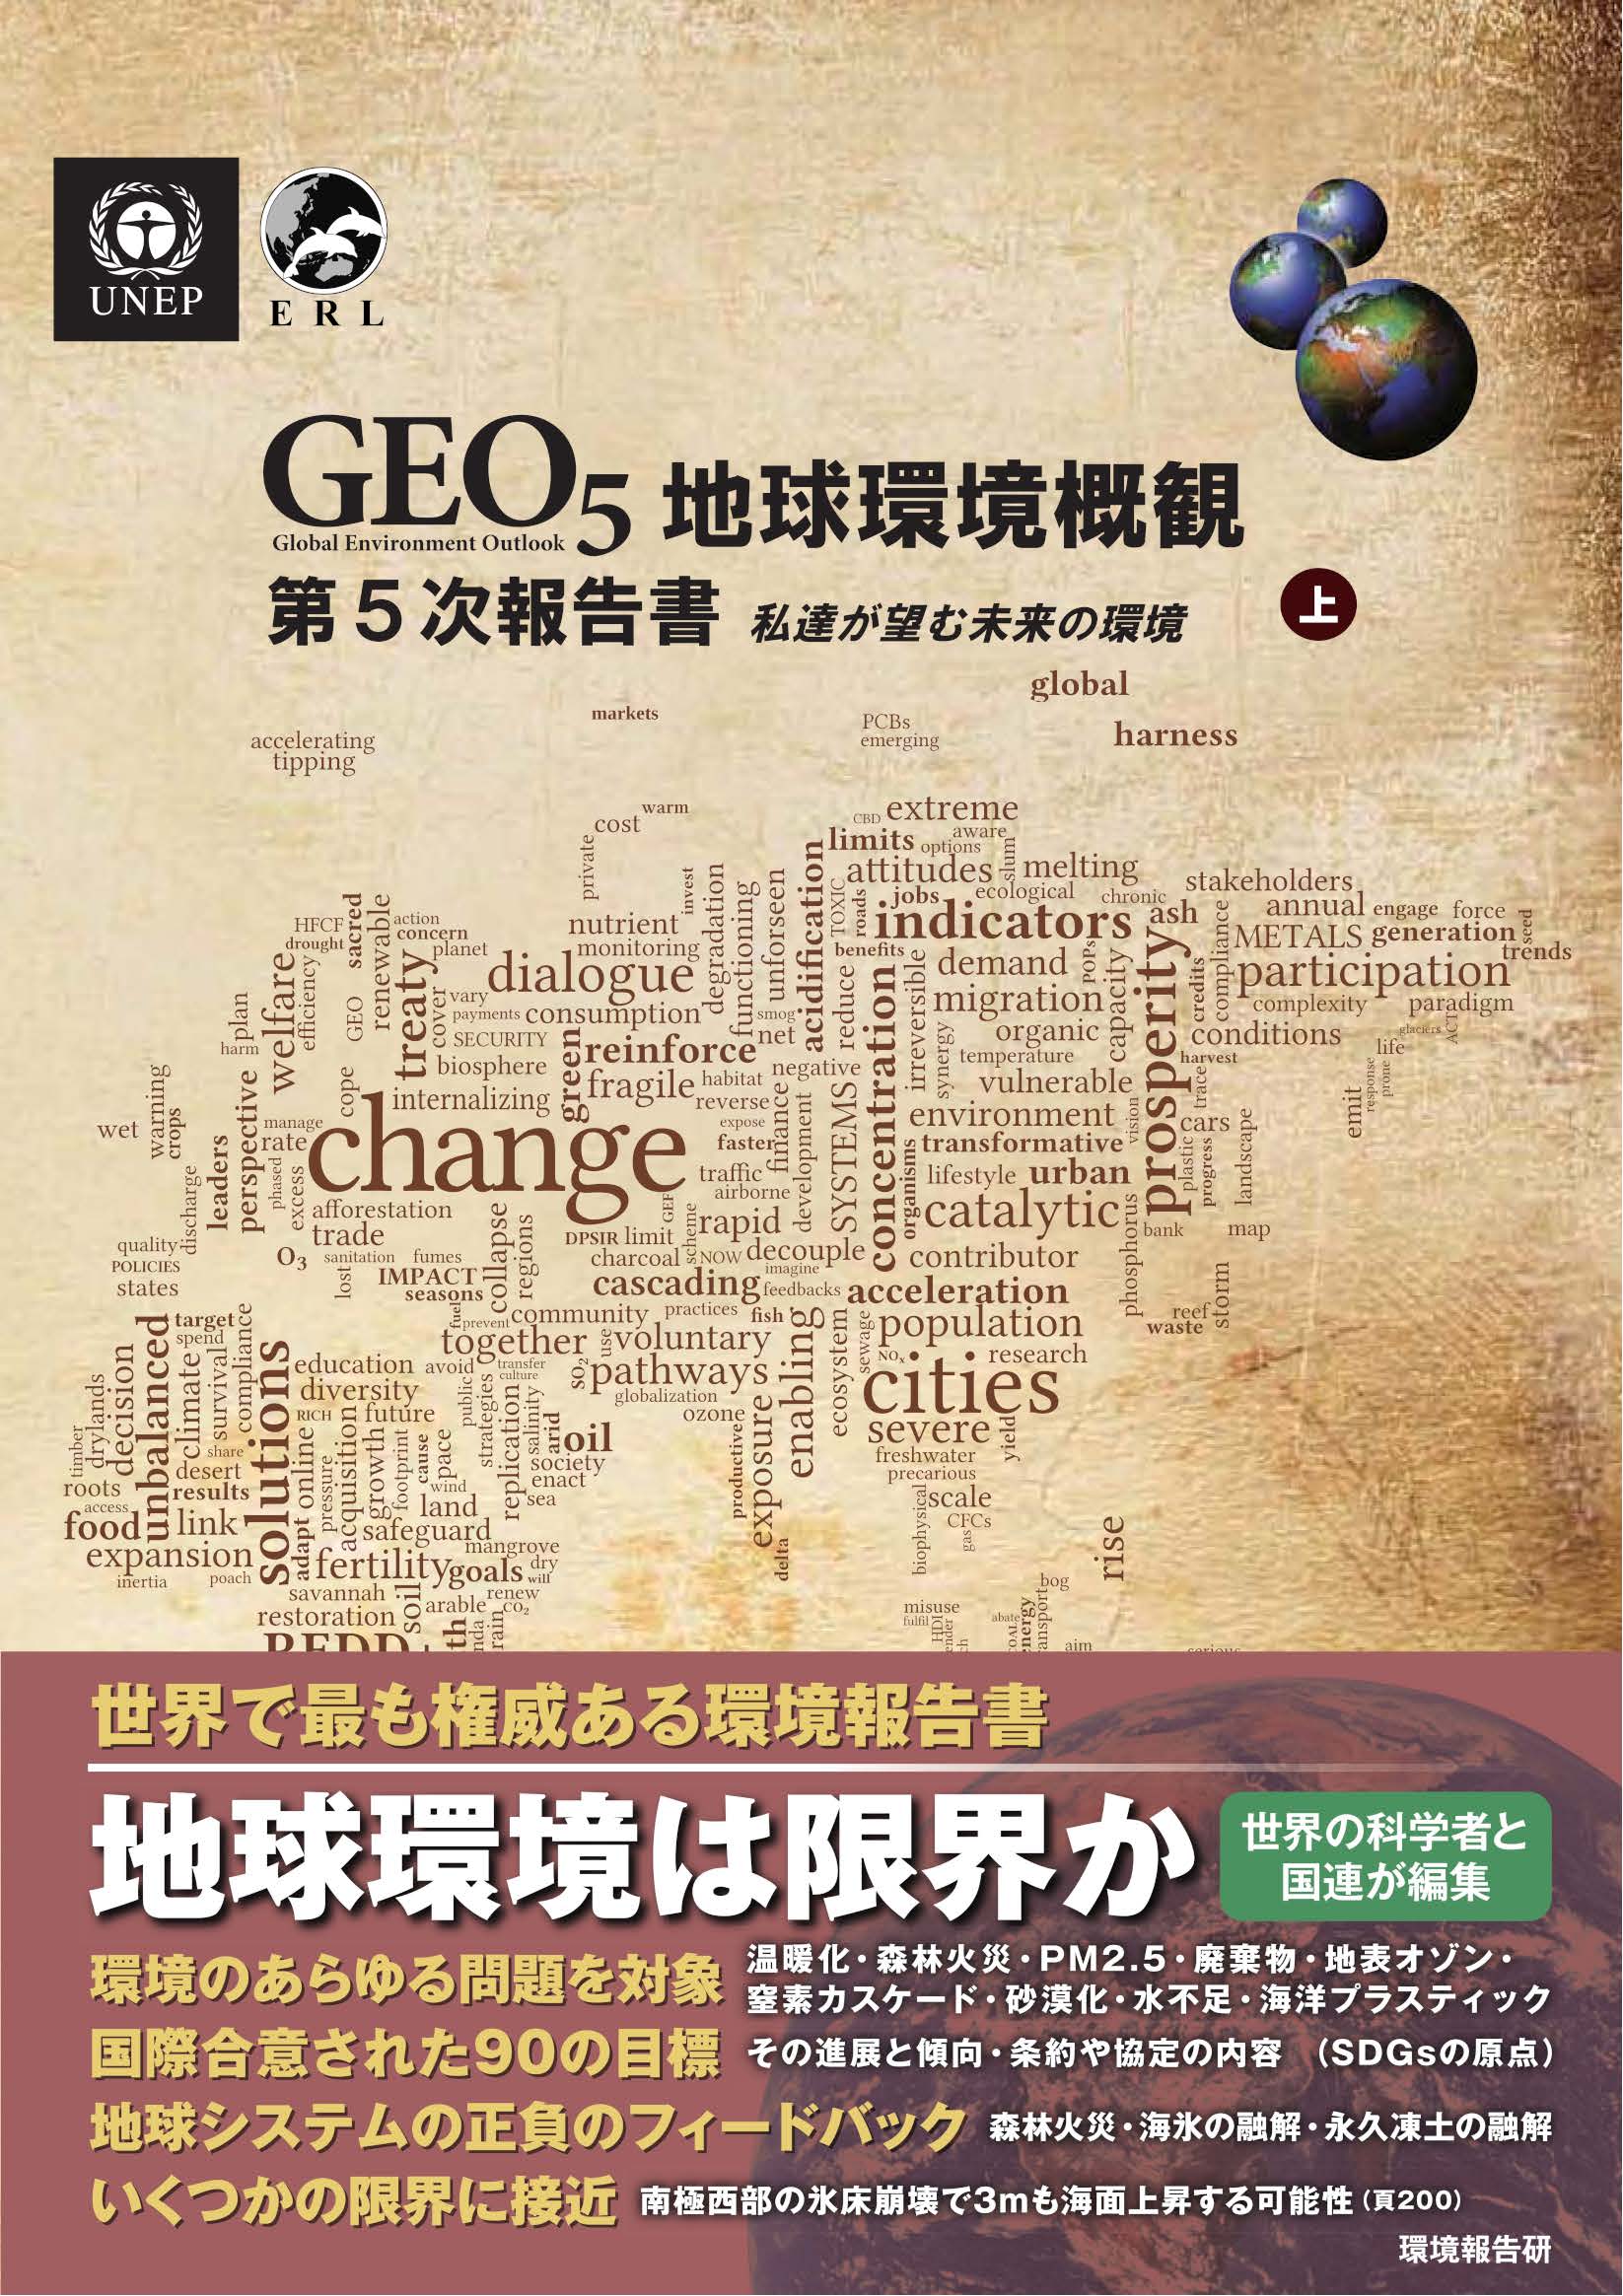 GEO-5日本語版の表紙